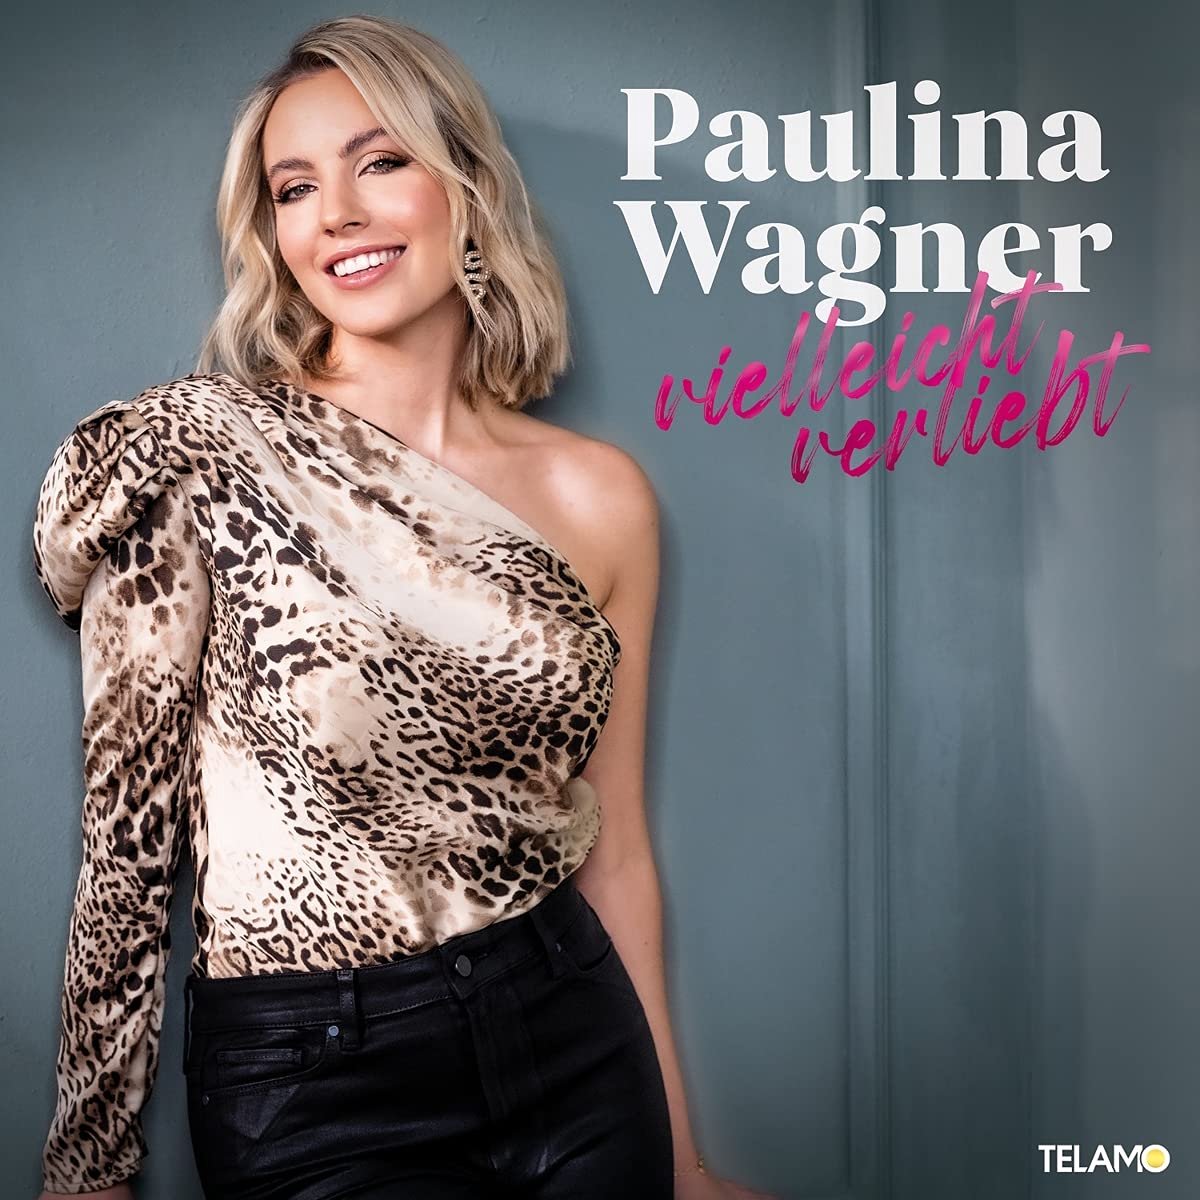 Paulina Wagner - Viellecht verliebt